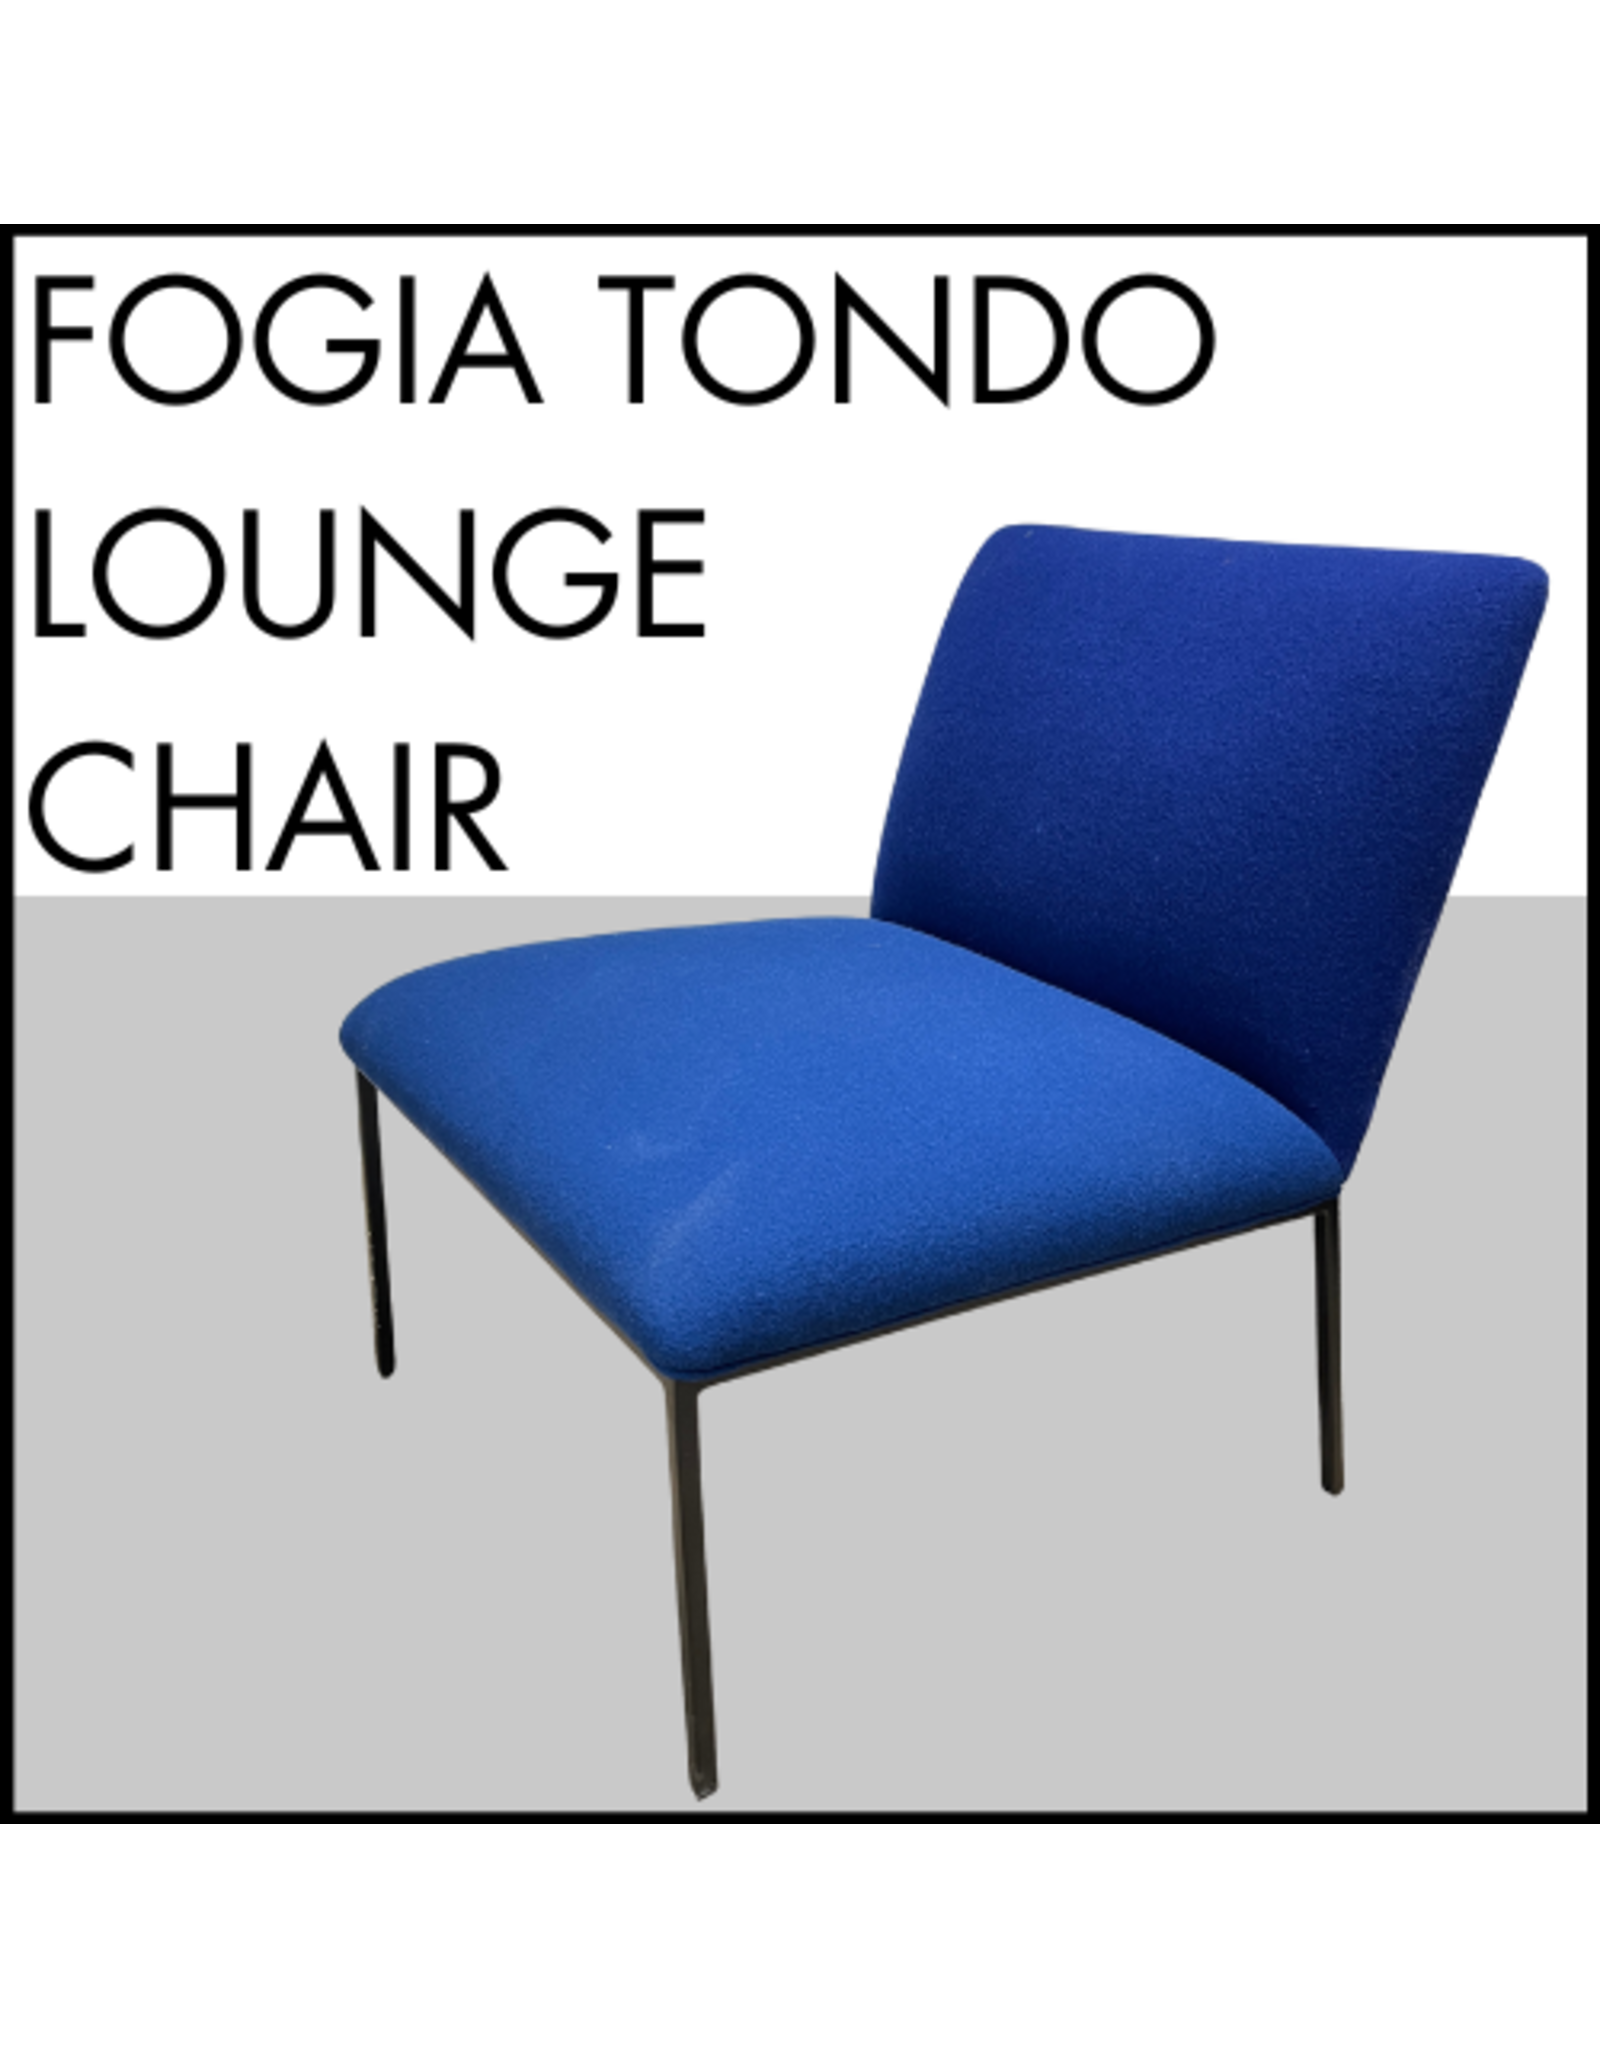 Fogia Tondo Lounge Chair